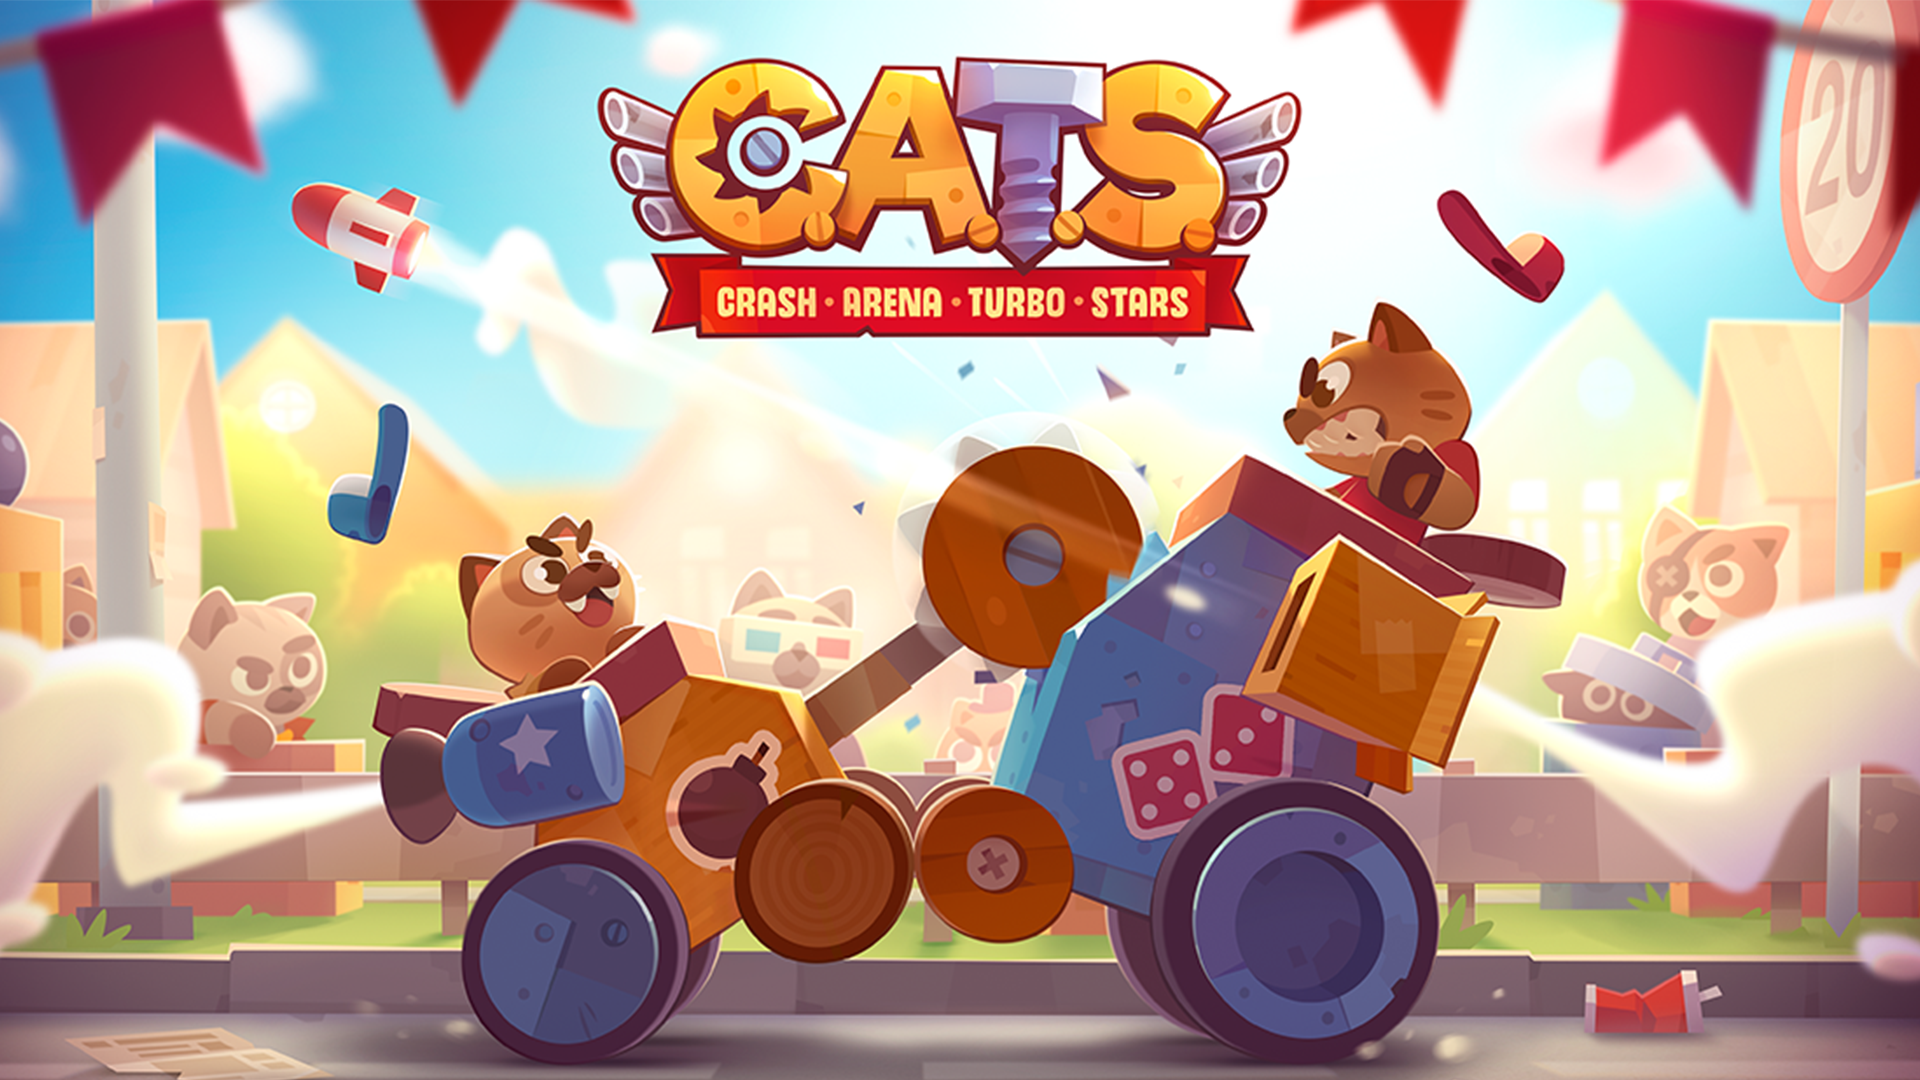 Banner of CATS: क्रैश एरिना टर्बो स्टार्स 3.16.1